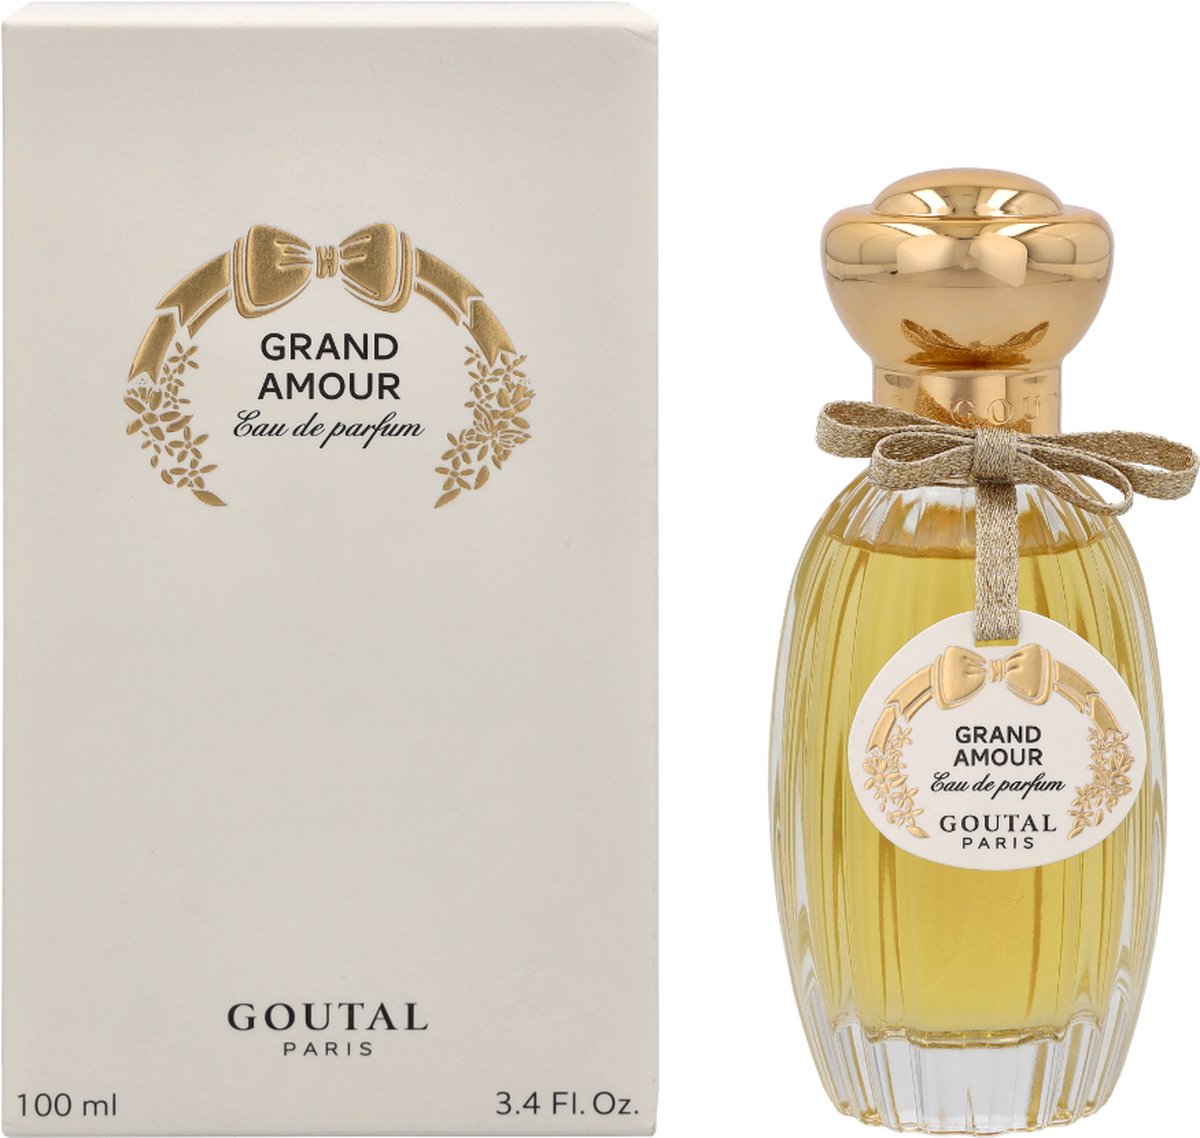 Goutal Paris Grand Amour Eau de Parfum 100ml